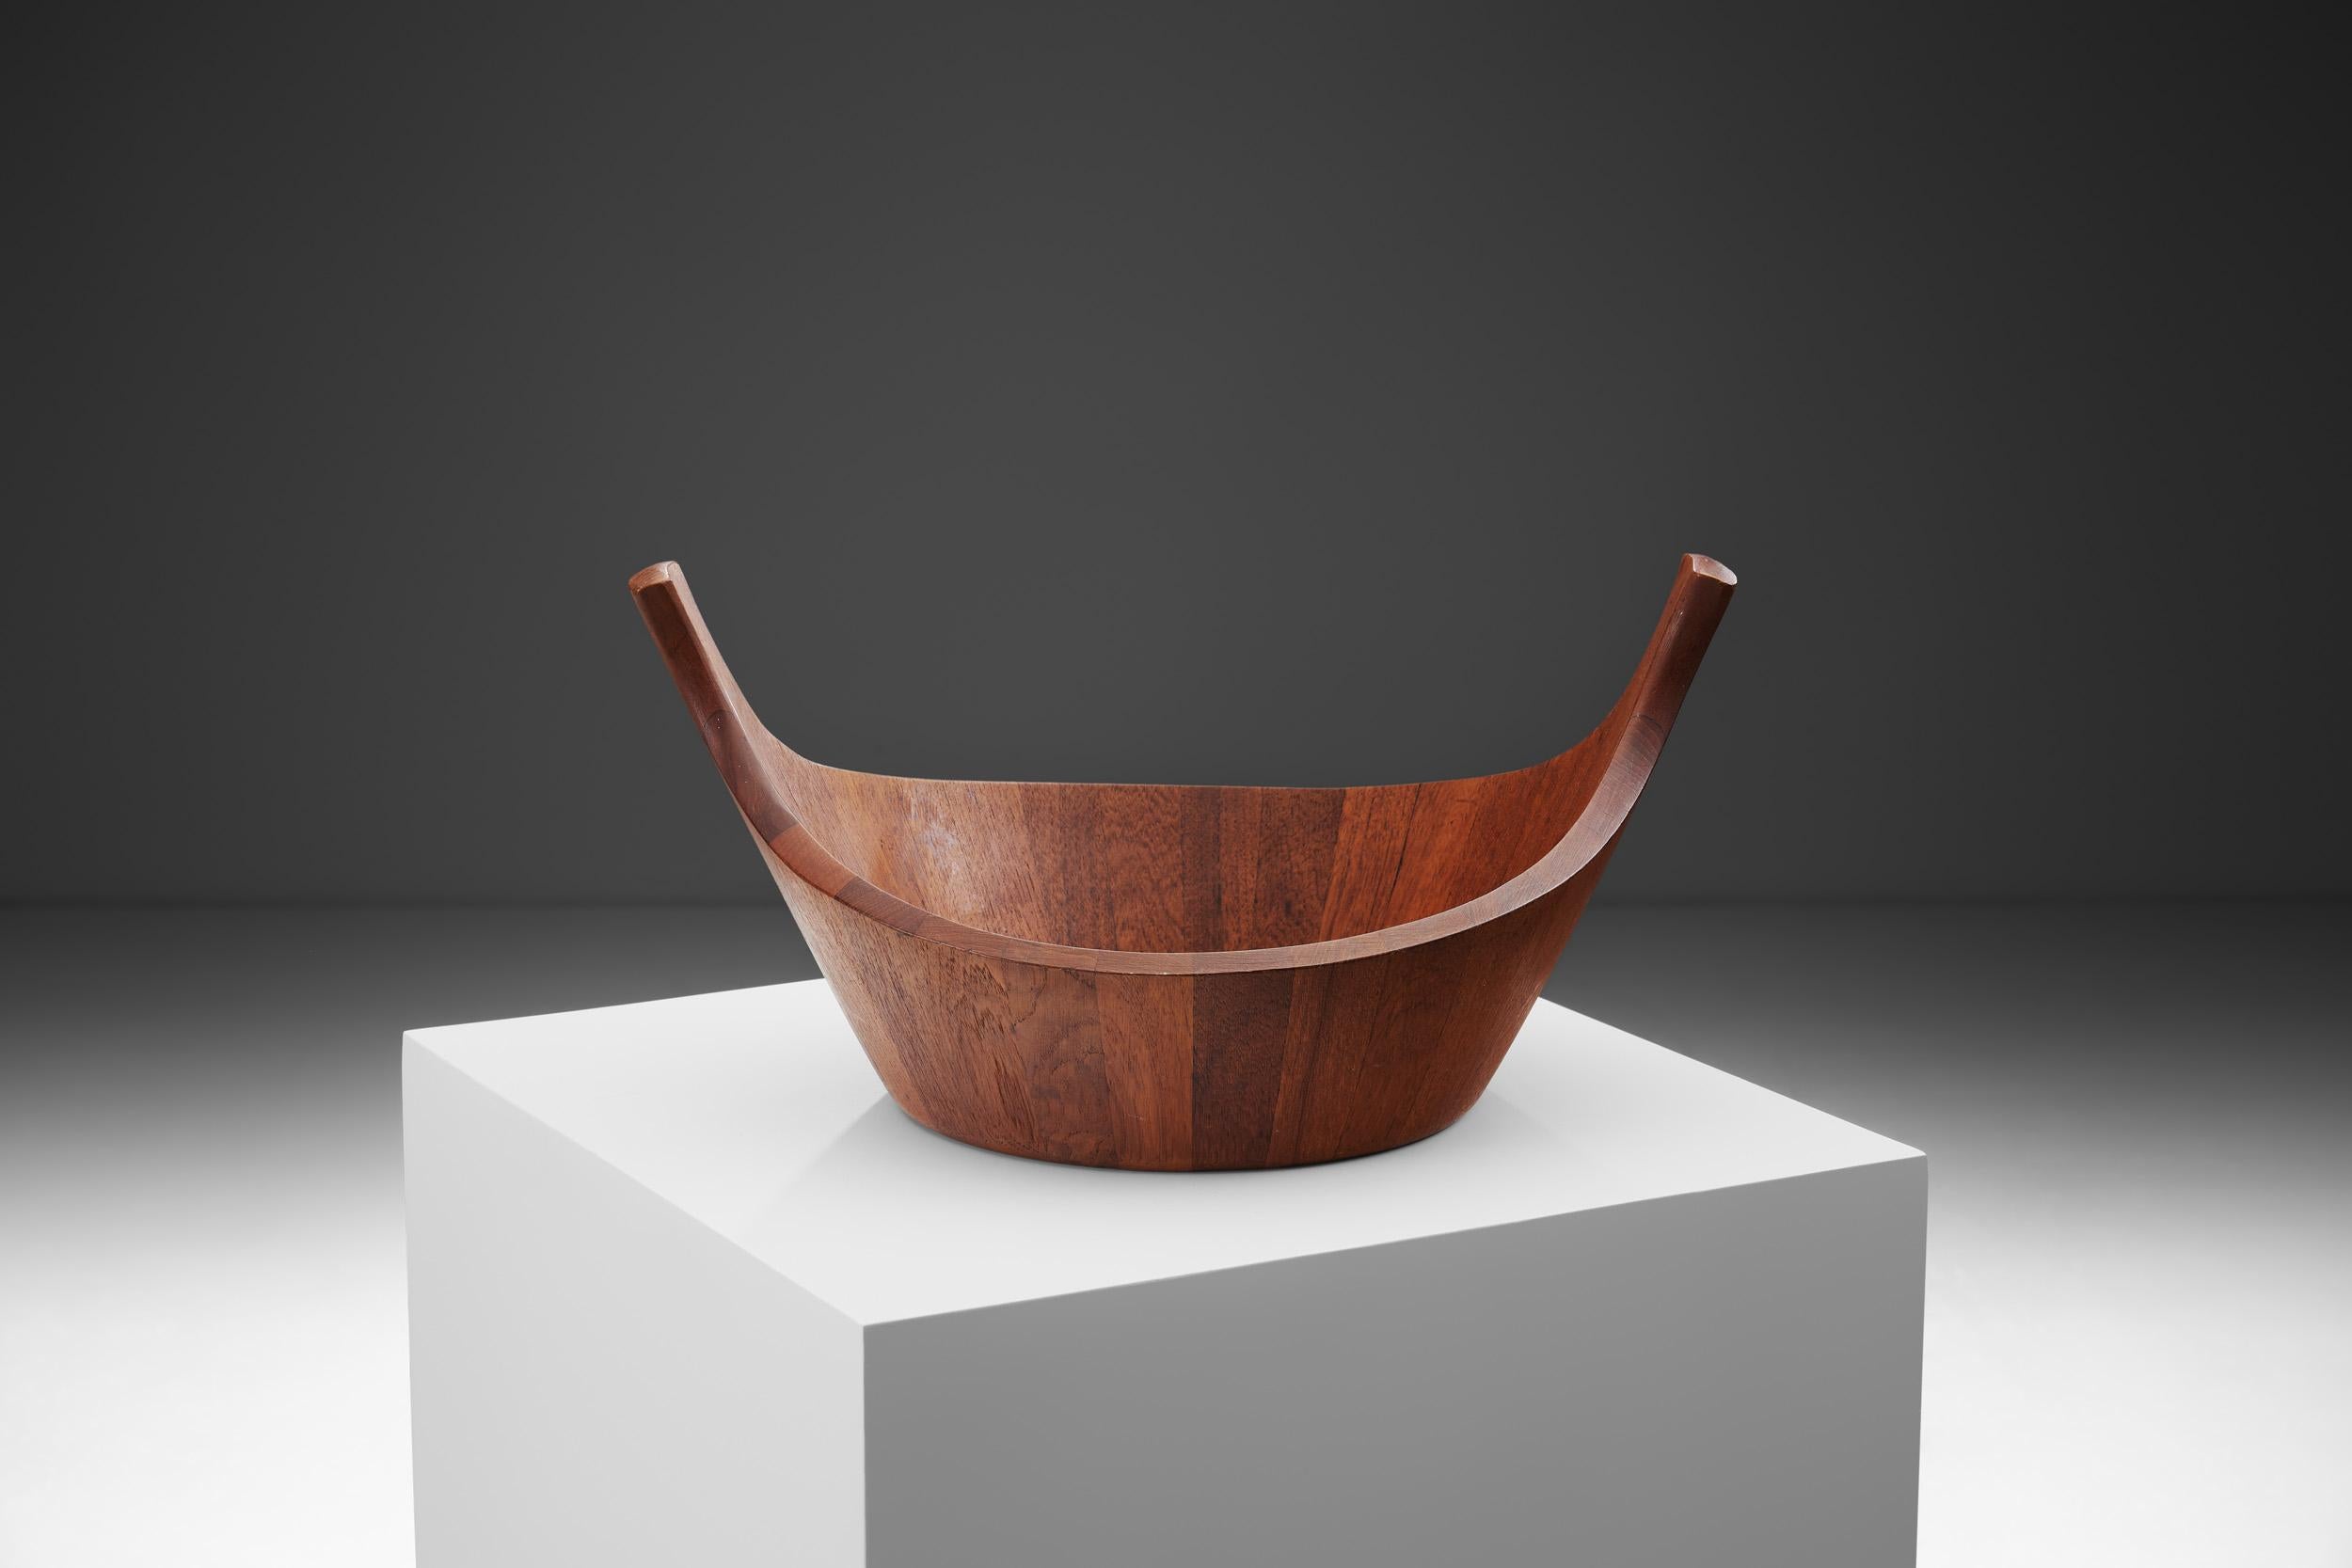 Scandinavian Modern Jens Quistgaard Staved Teak Bowl for Dansk Design, Denmark, 1950s For Sale